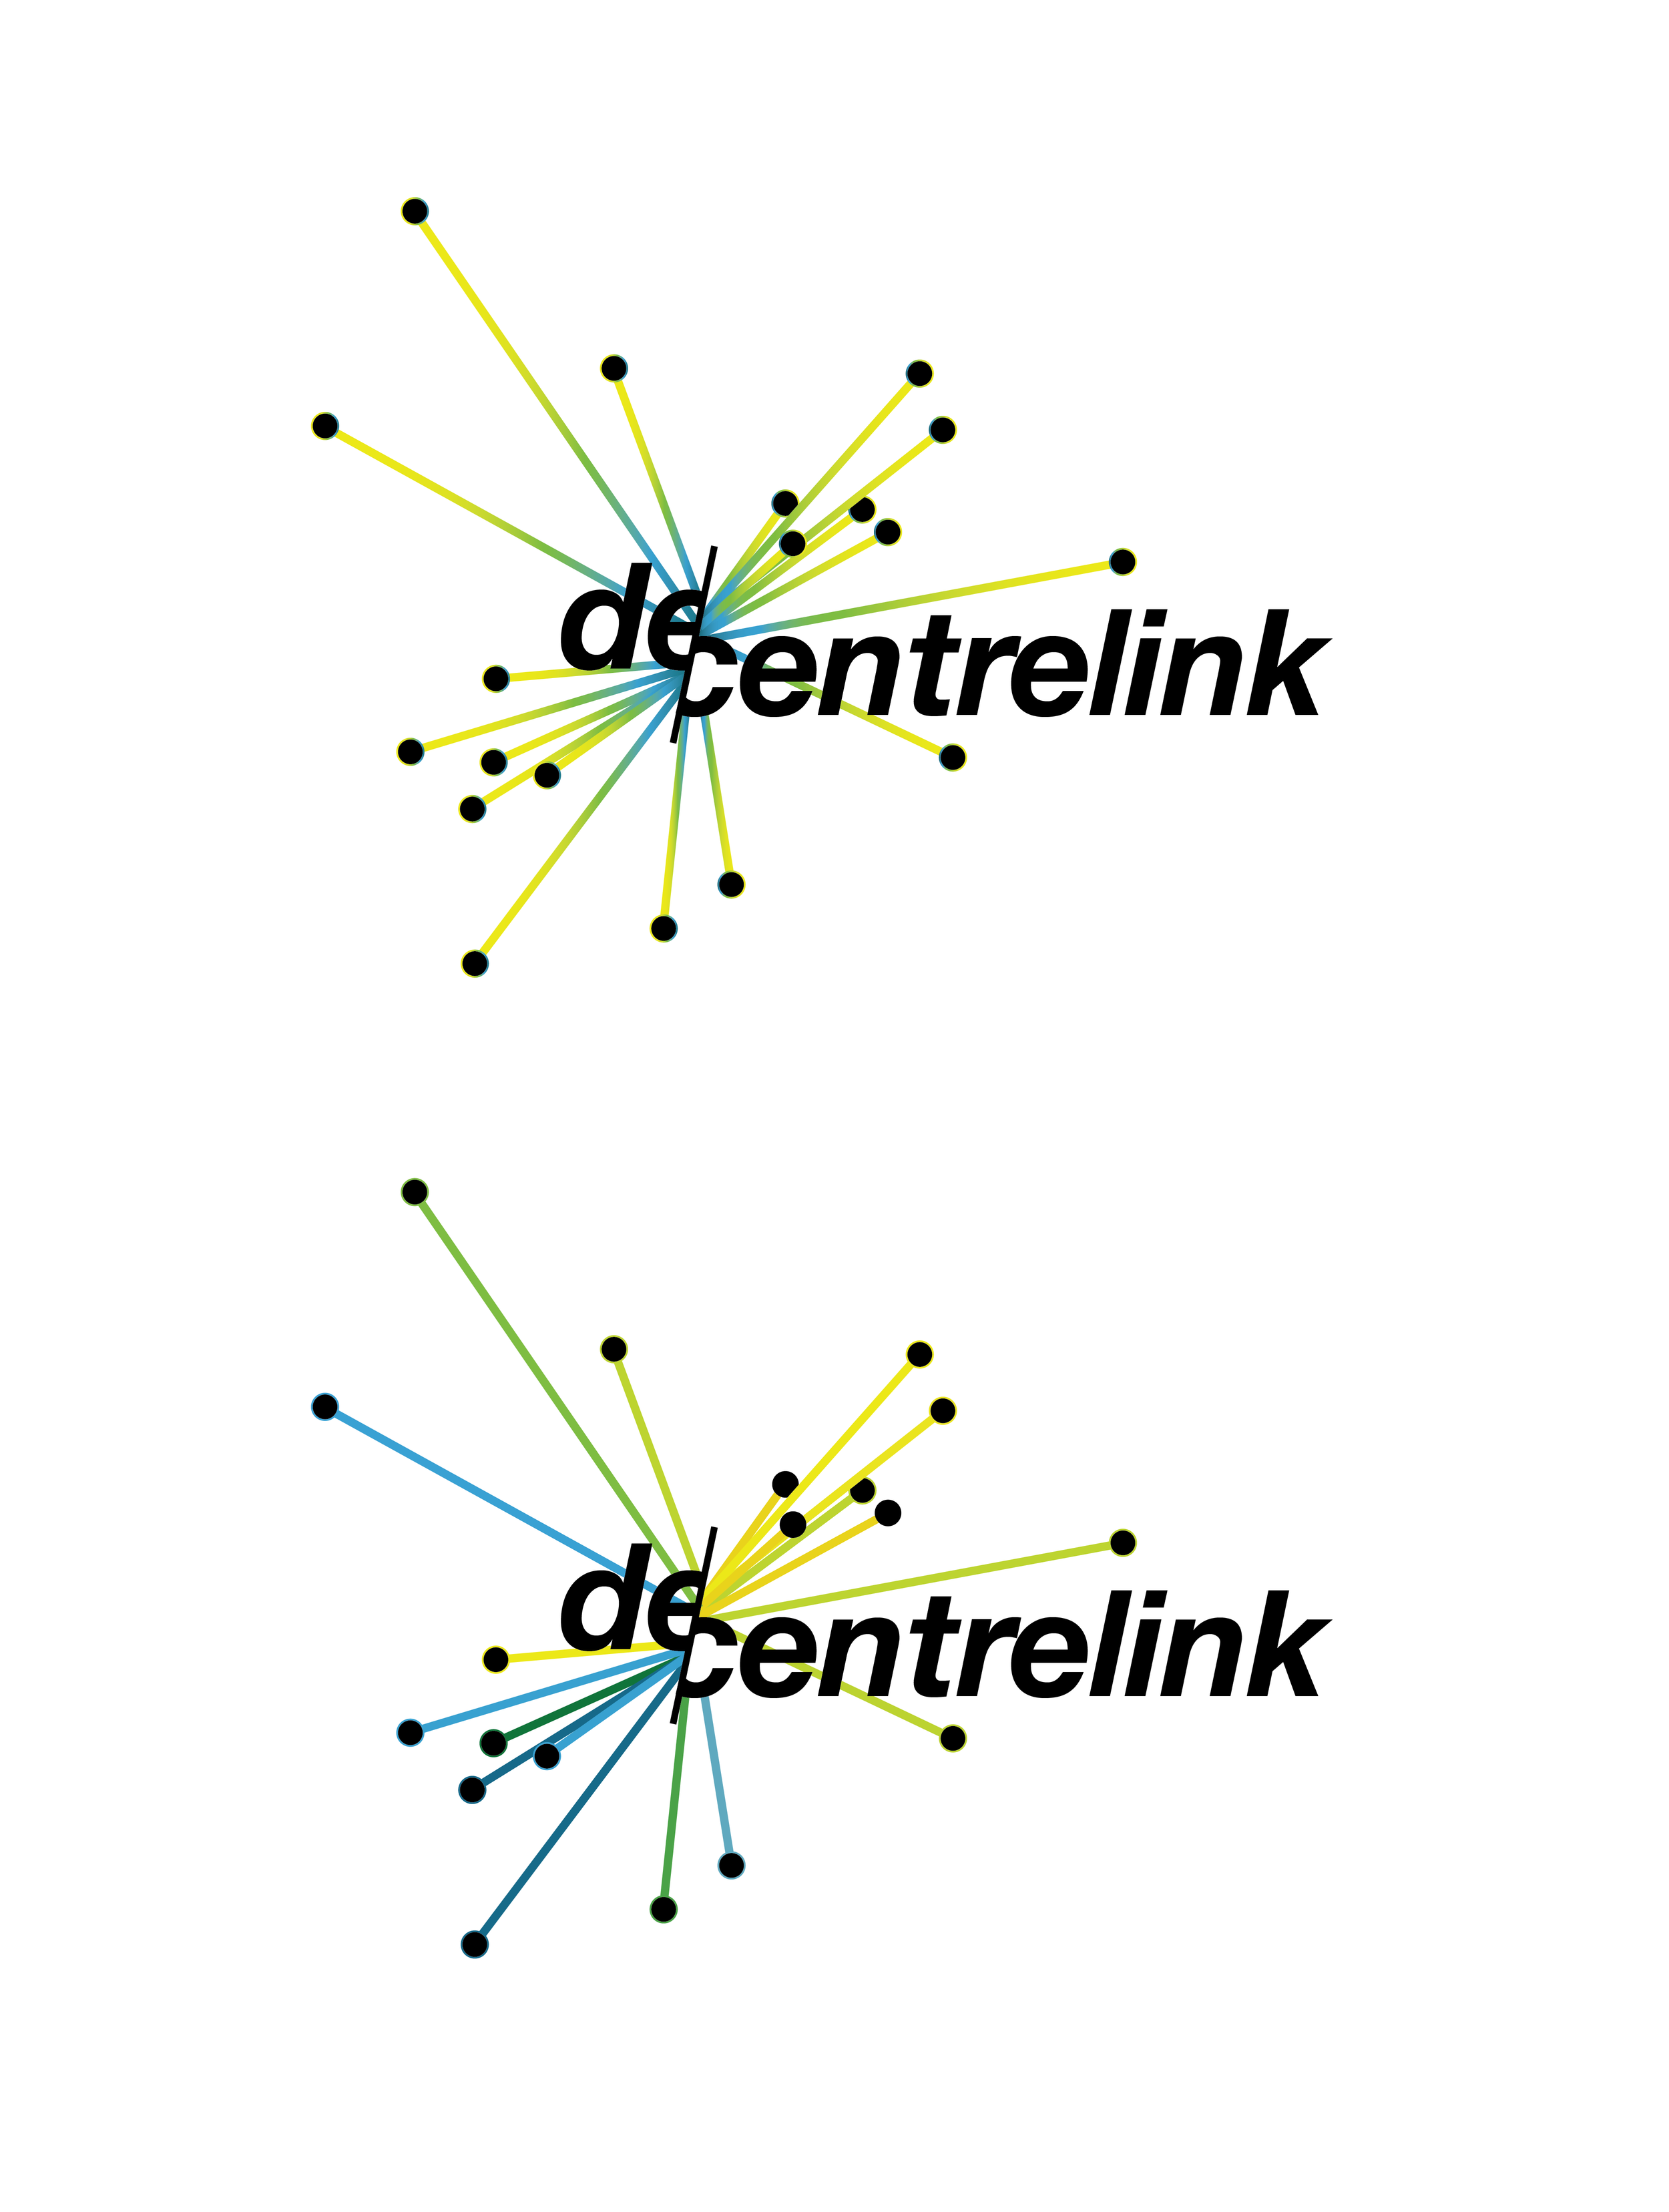 decentrelink_logo_v01-05.png